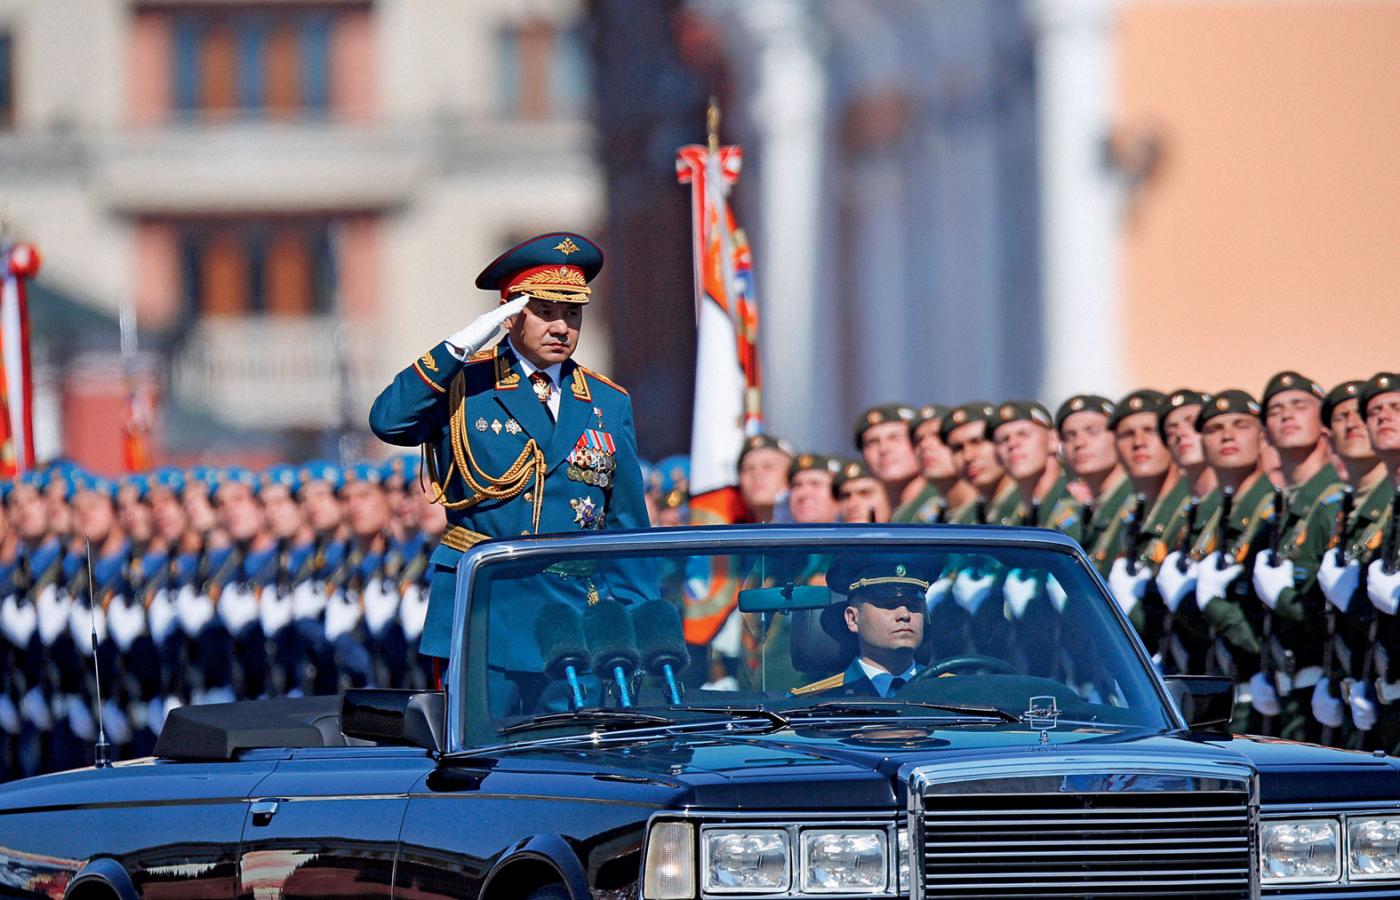 Siergiej Szojgu, minister obrony Federacji Rosyjskiej, jest z pochodzenia Tuwińczykiem.